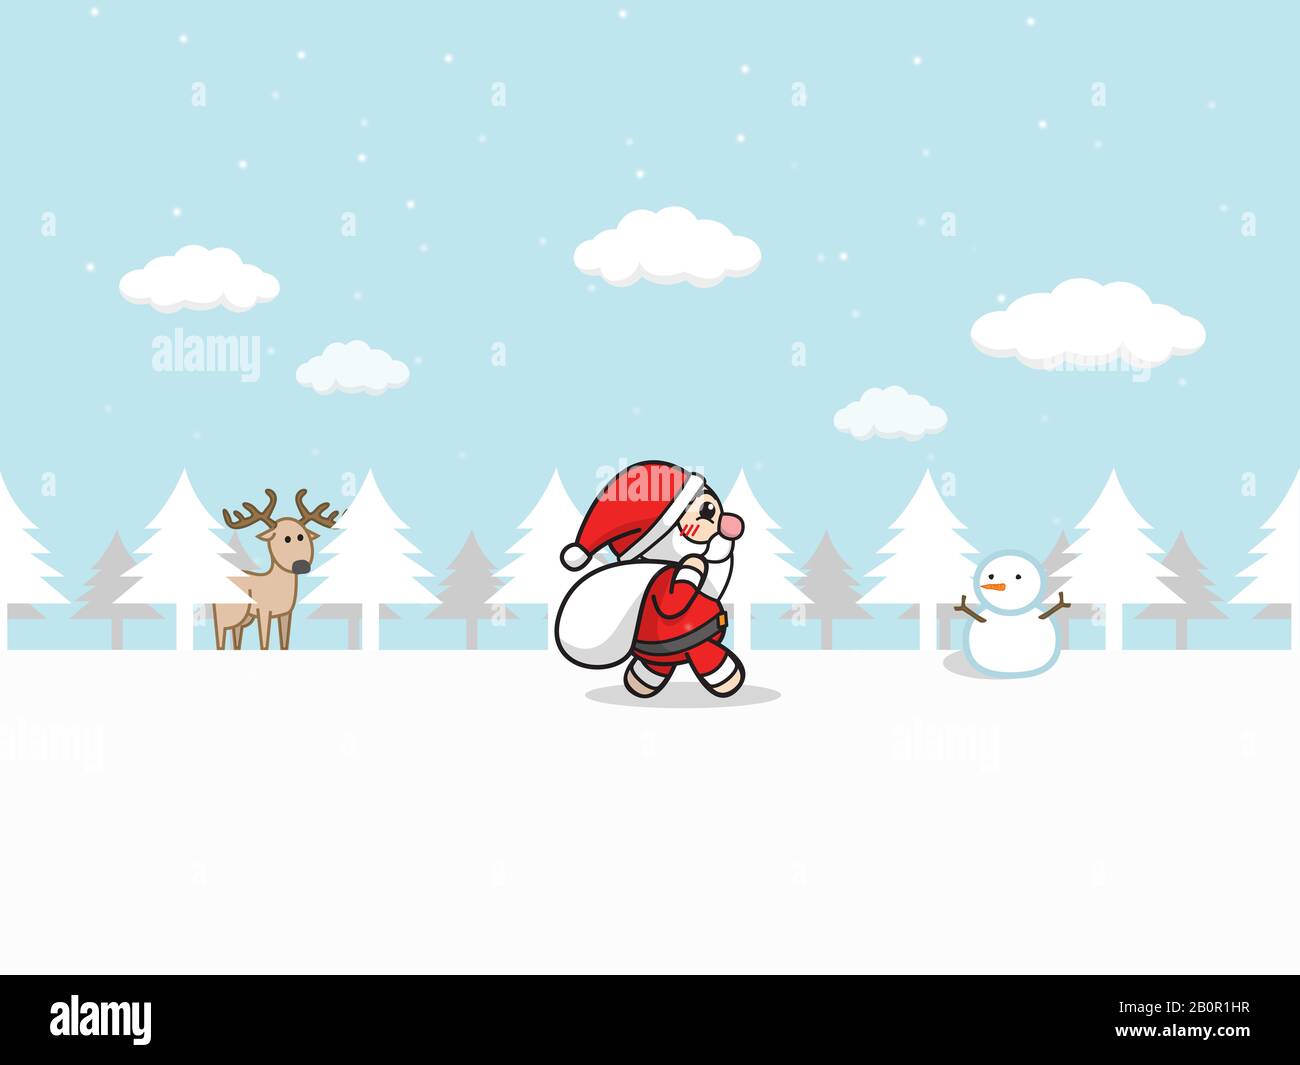 Navidad Santa Claus . dibujos animados Santa Claus con bolsa de regalo caminar en el bosque de nieve con paisaje de invierno, nieve caer, muñeco de nieve y renos Foto de stock